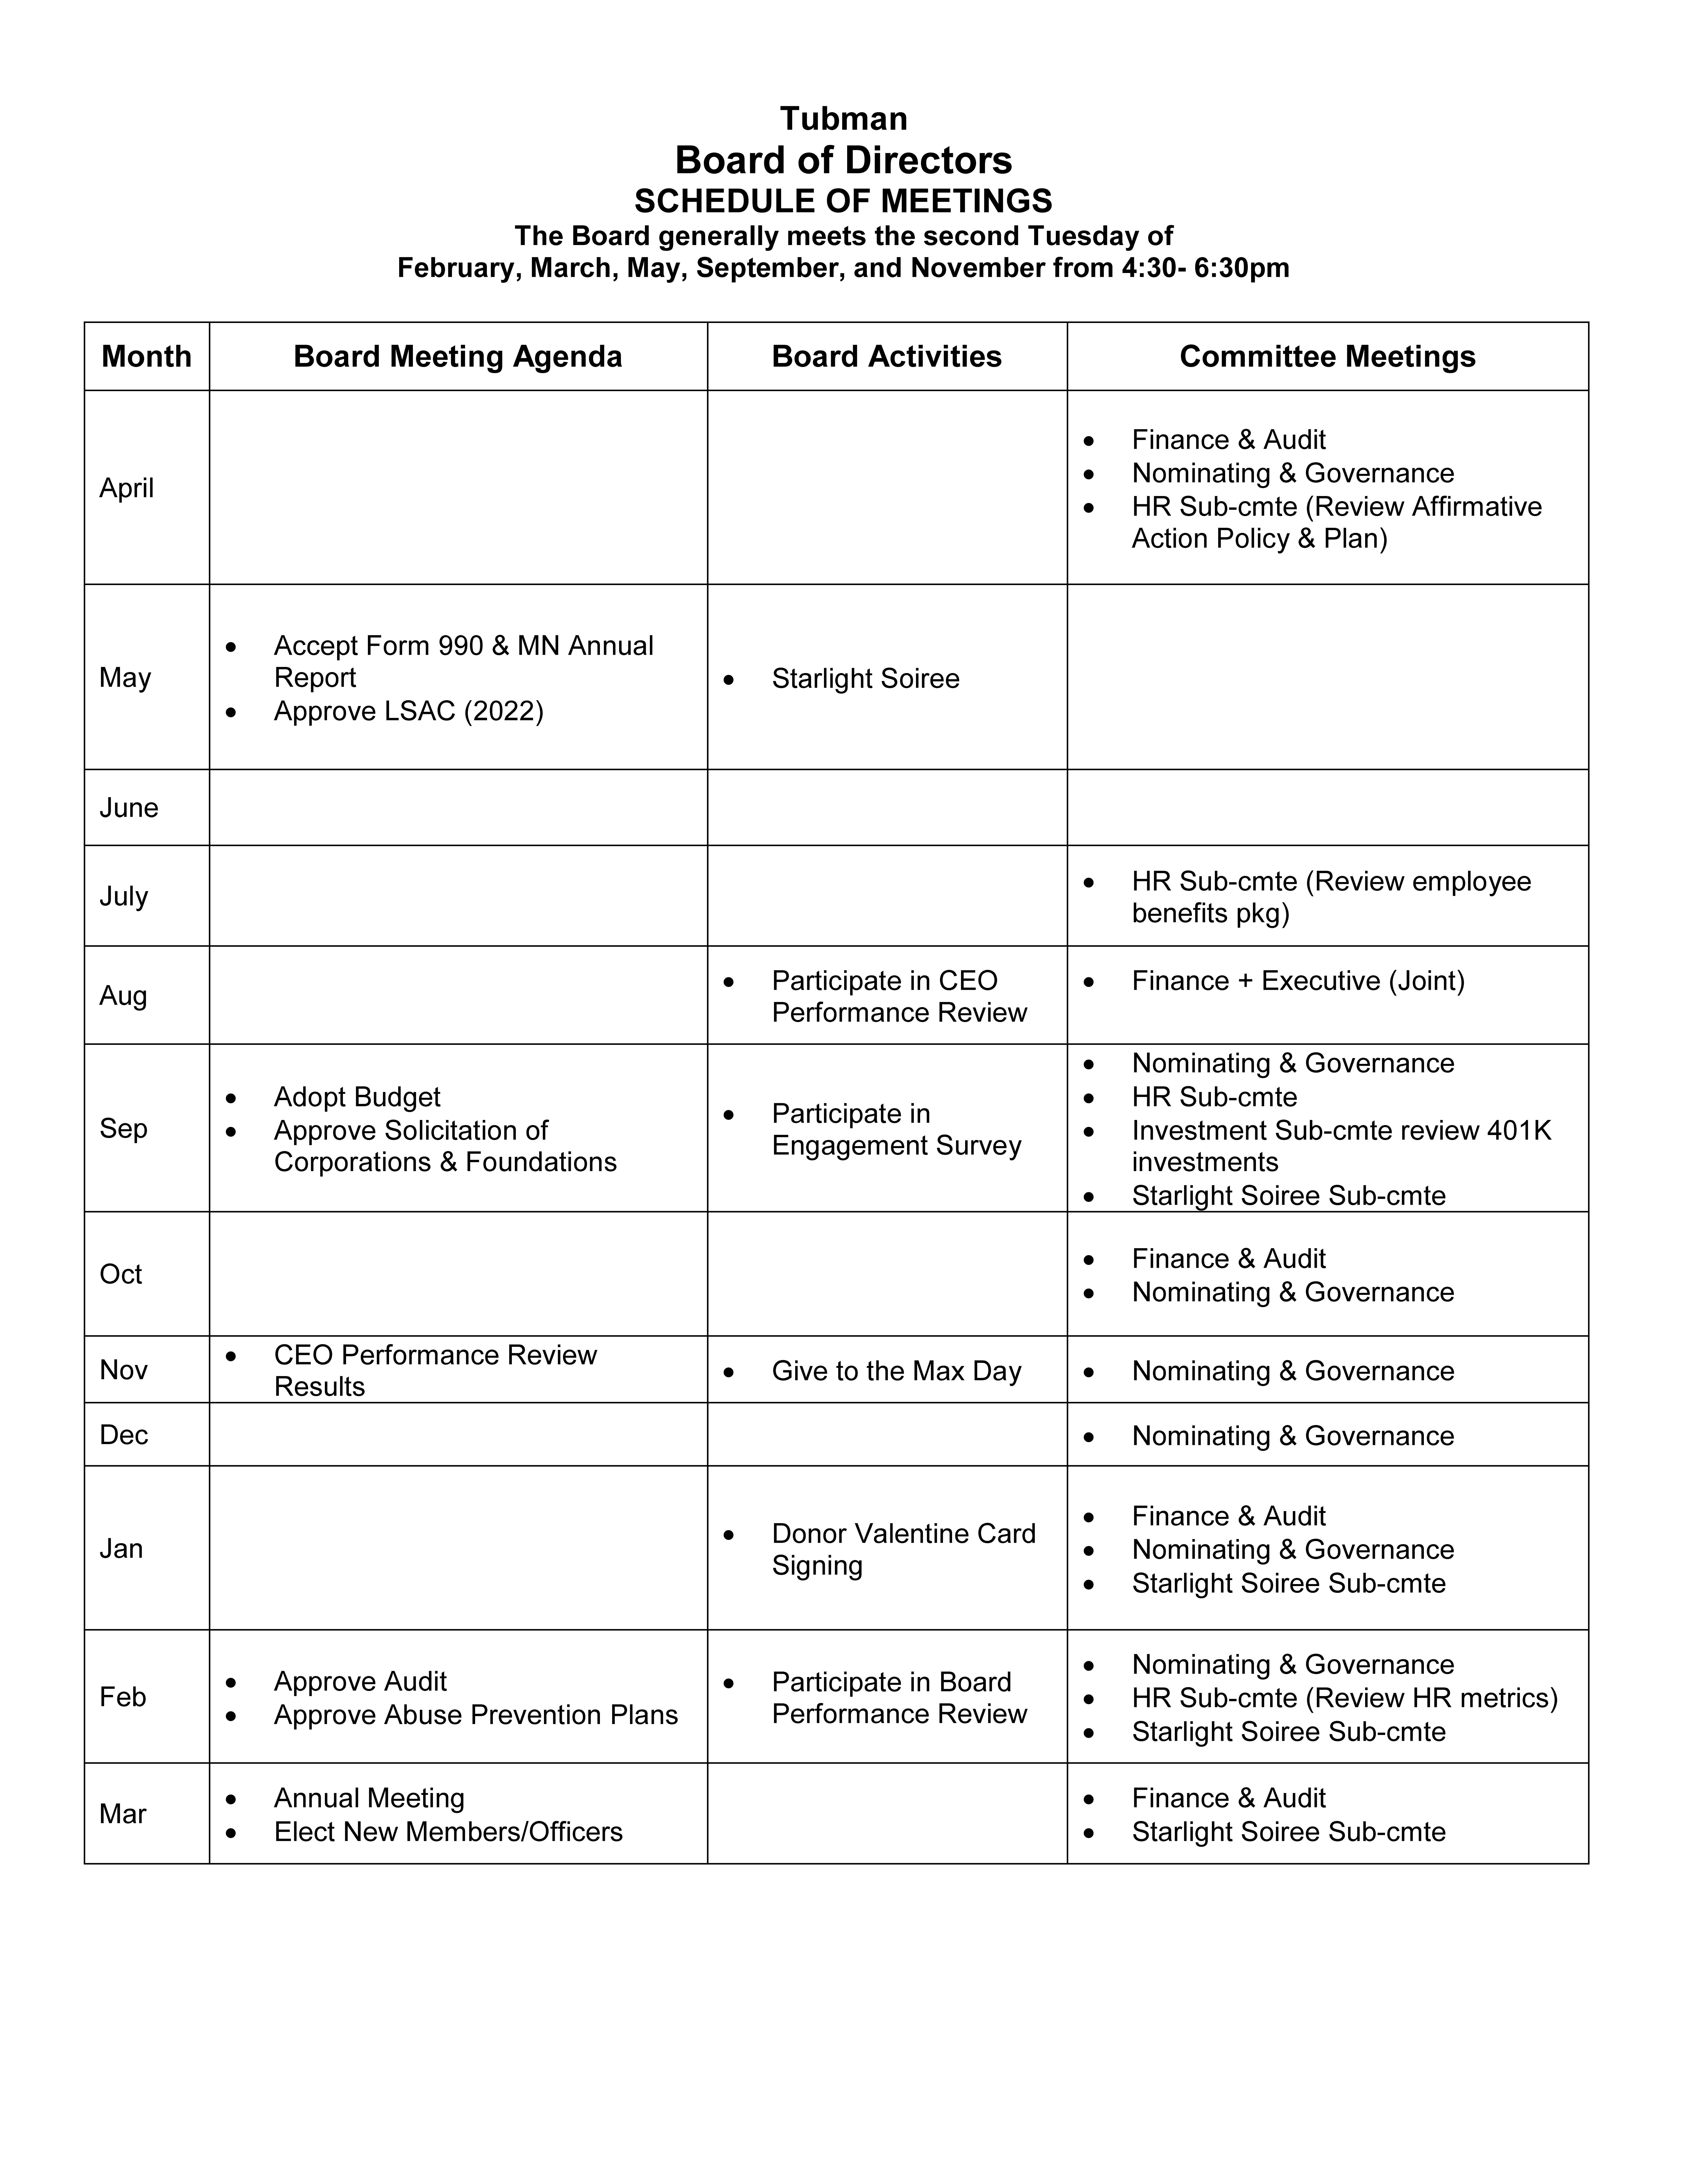 Schedule of Meetings